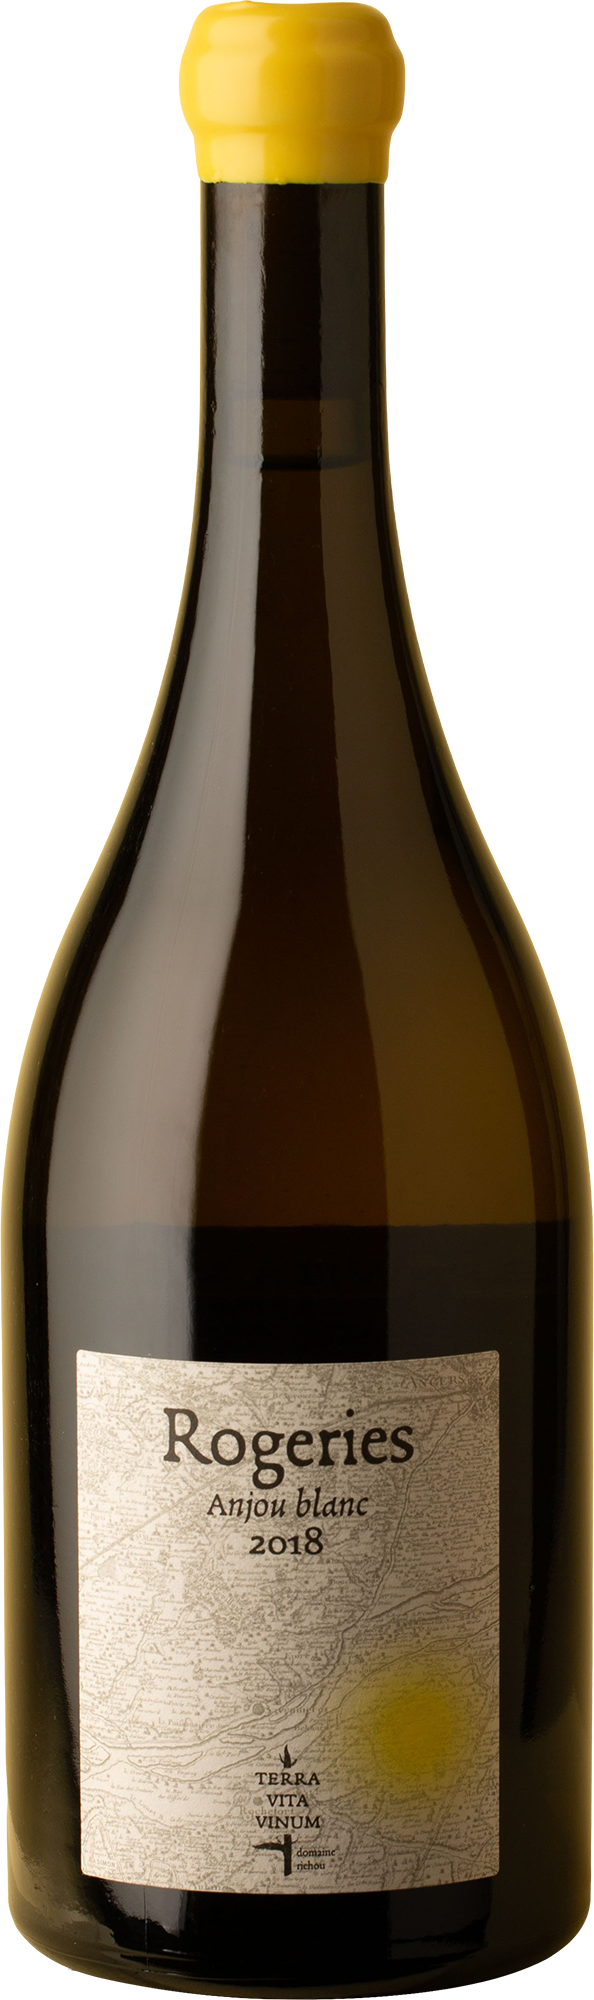 Terre Vita Vinum - Anjou Blanc Rojeries Chenin Blanc 2018 White Wine